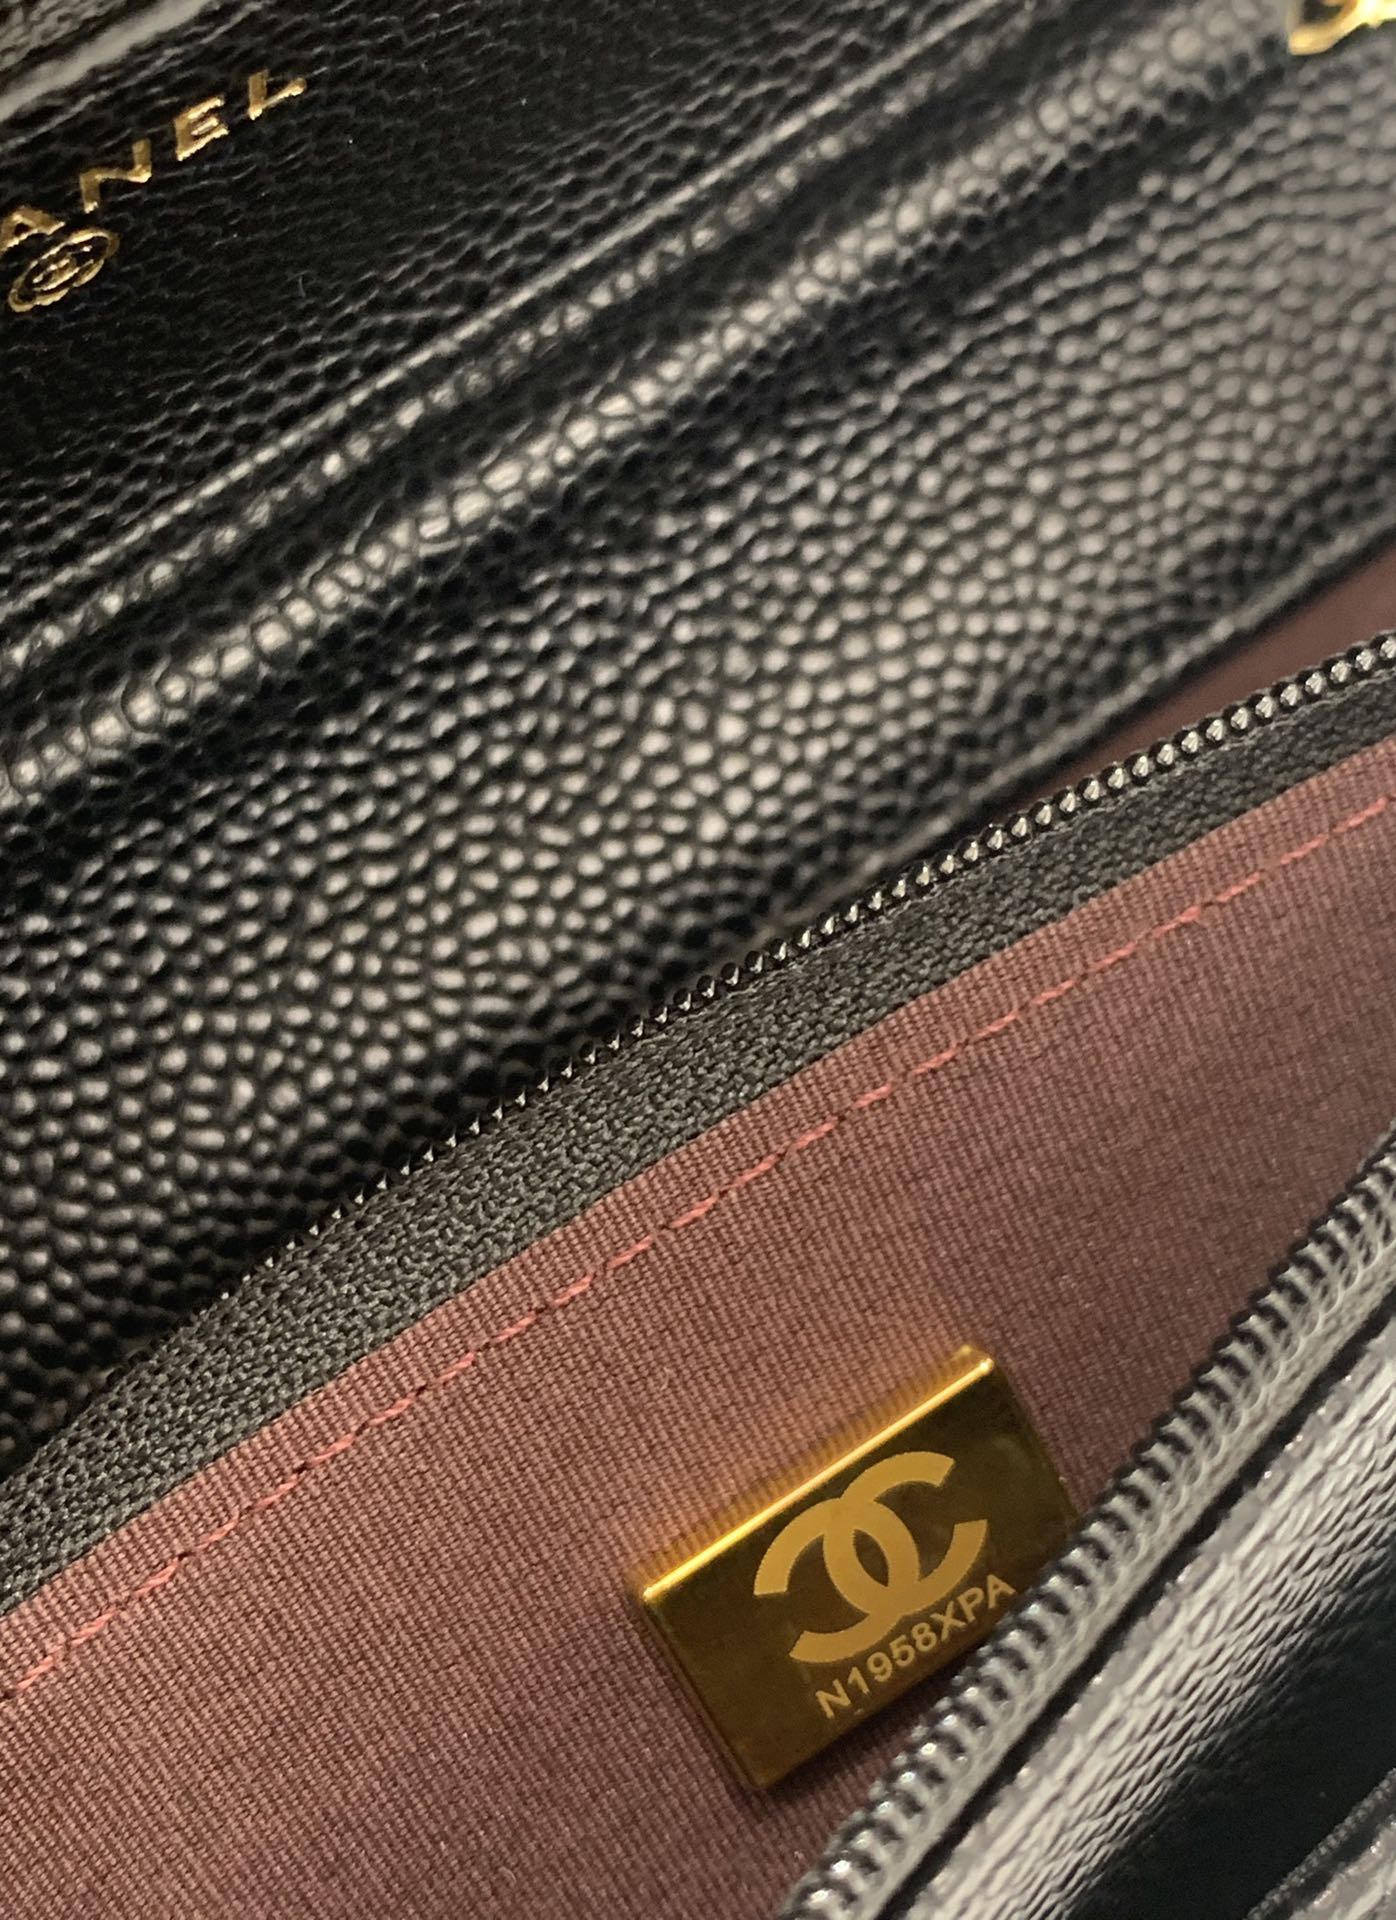 新版→吸扣版发财包 wallet on chain黑球金 Chanel Woc链条包 19.5*12*3.5